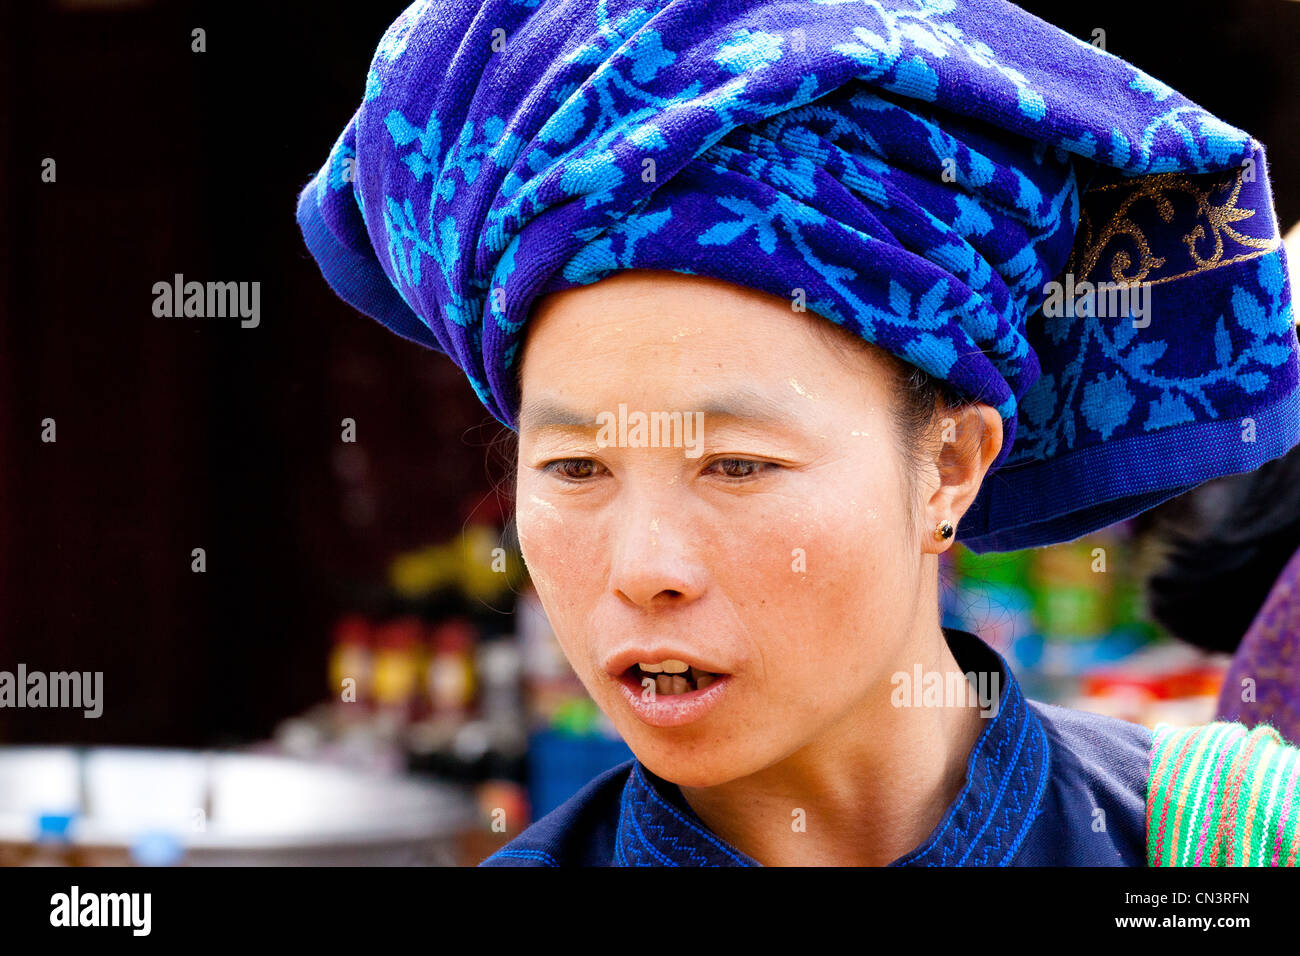 Myanmar (Birmania), el estado de Shan, Aungban, retrato de mujer palaung Foto de stock